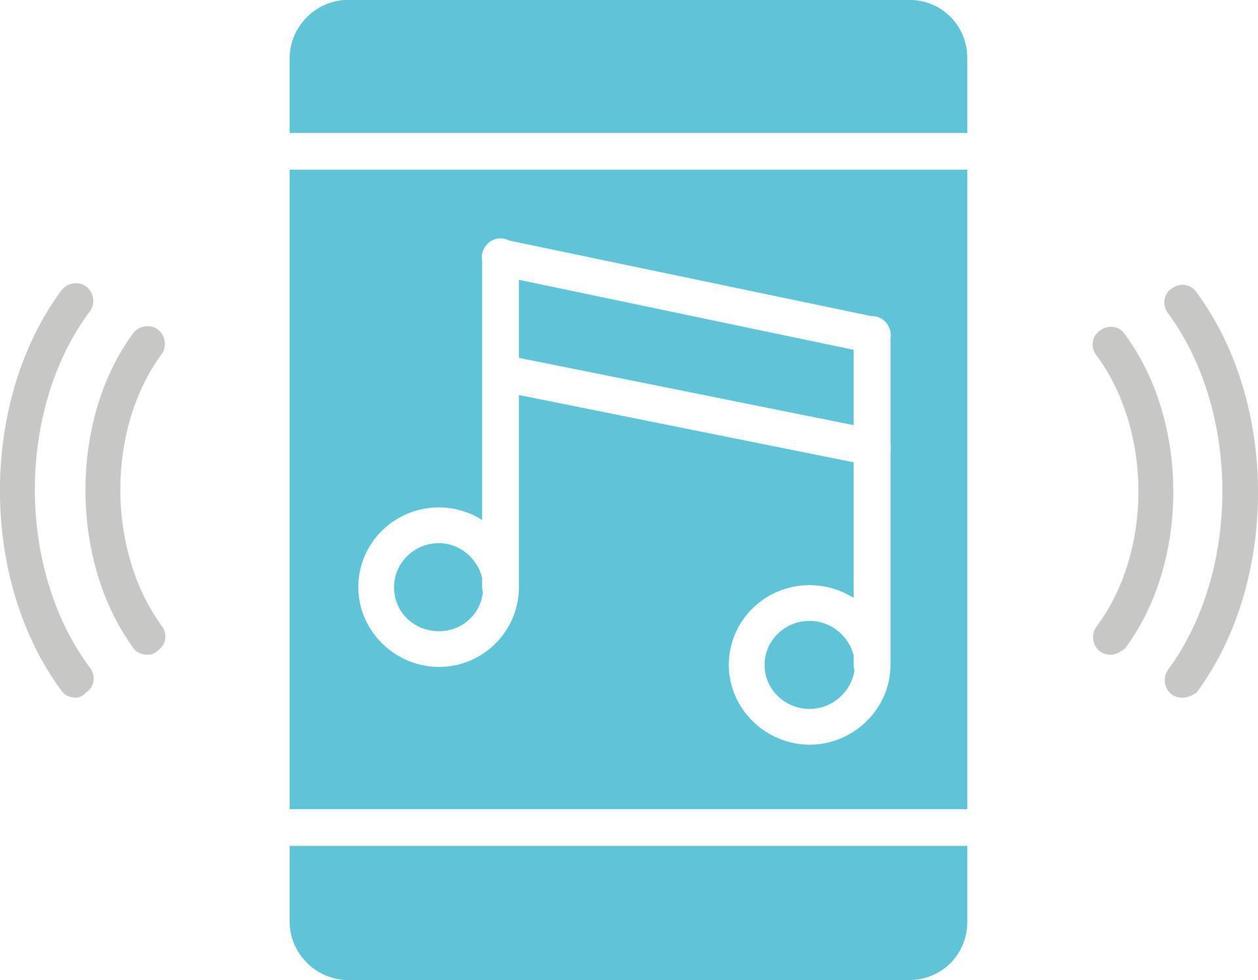 musik app vektor ikon